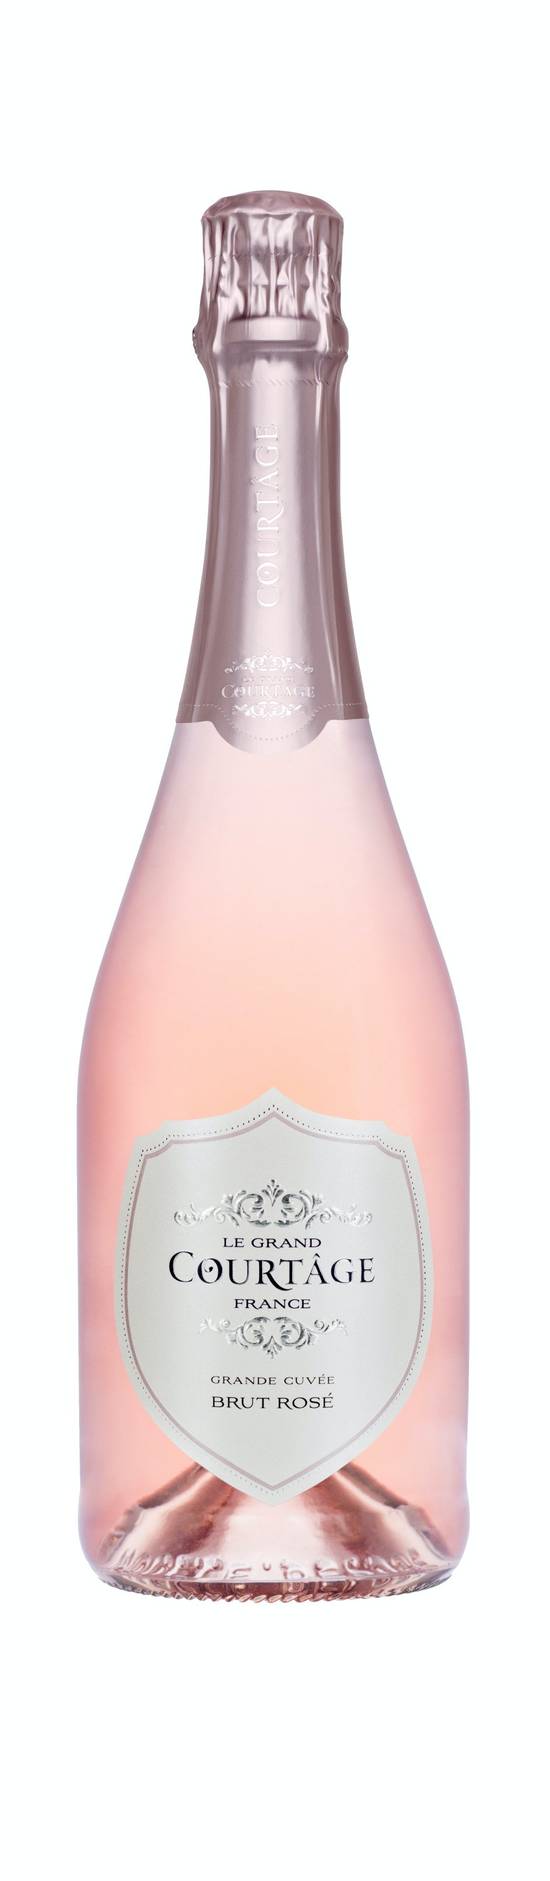 Le Grand Courtage Grande Cuvée Brut Rosé Wine (750 ml)